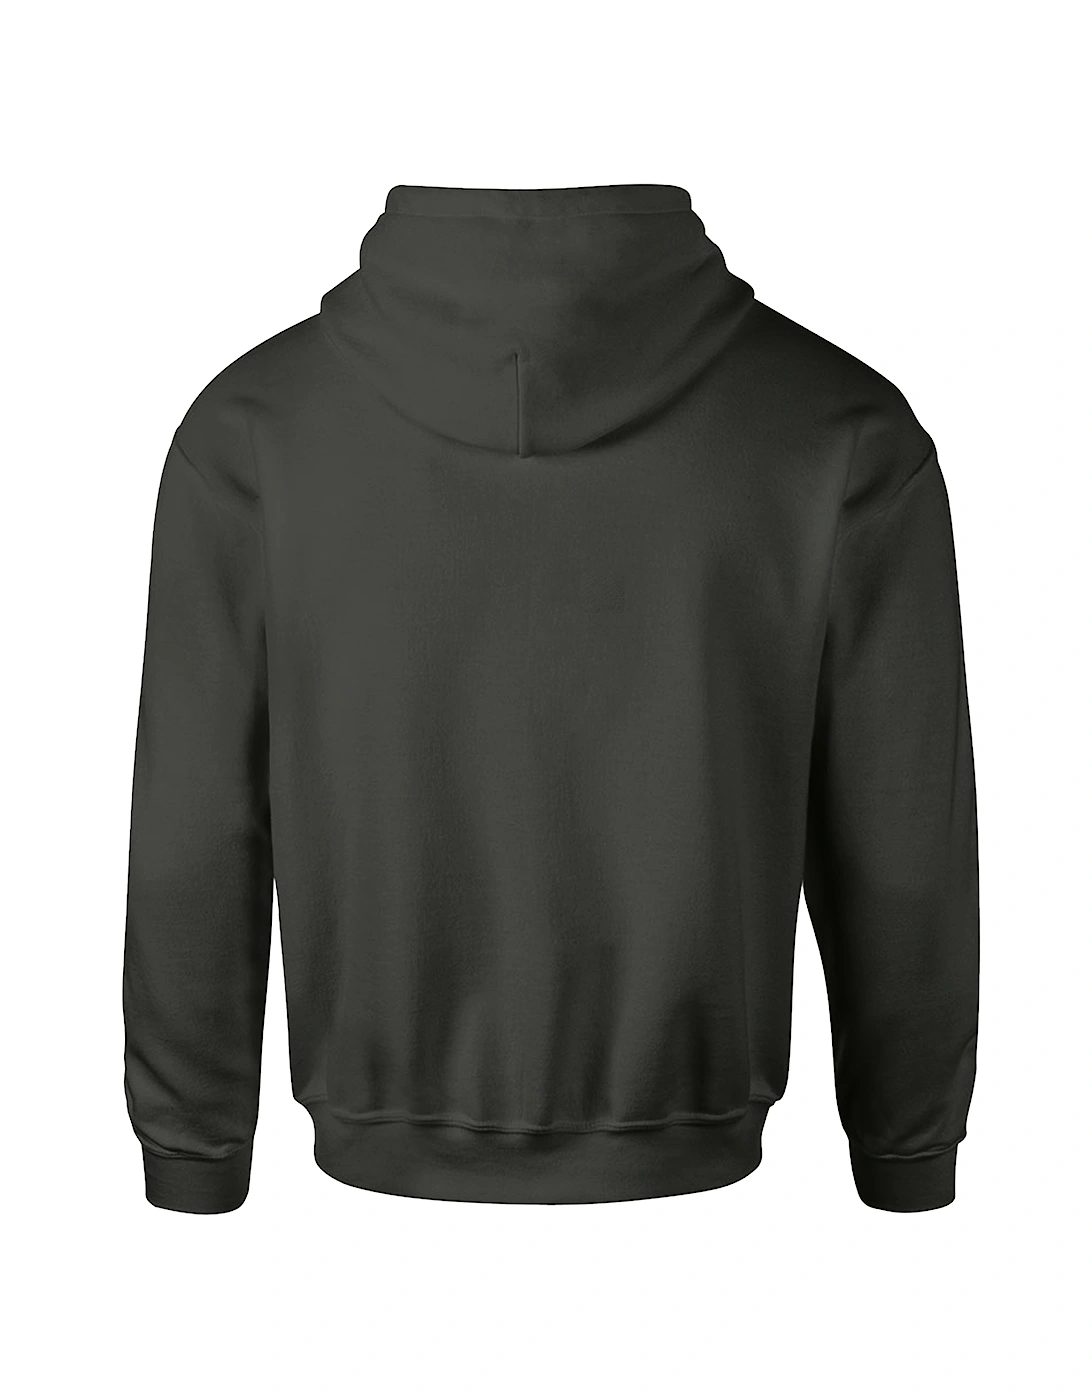 Mens Premium 70/30 Hooded Sweatshirt / Hoodie